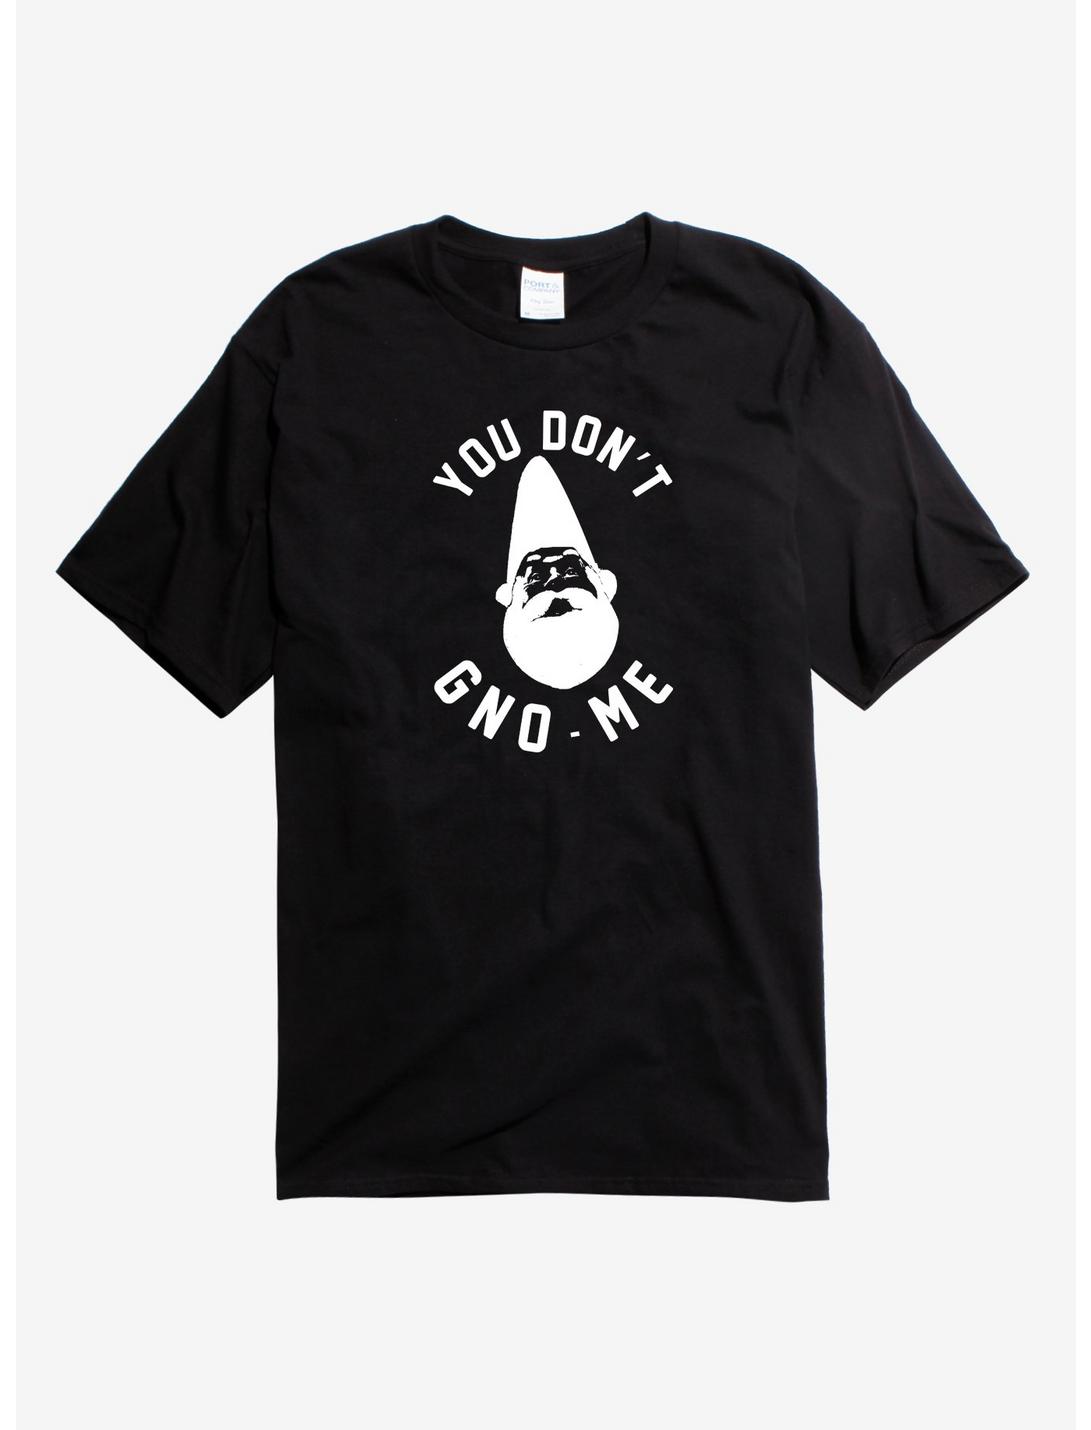 You Don't Gno-Me Gnome T-Shirt, BLACK, hi-res